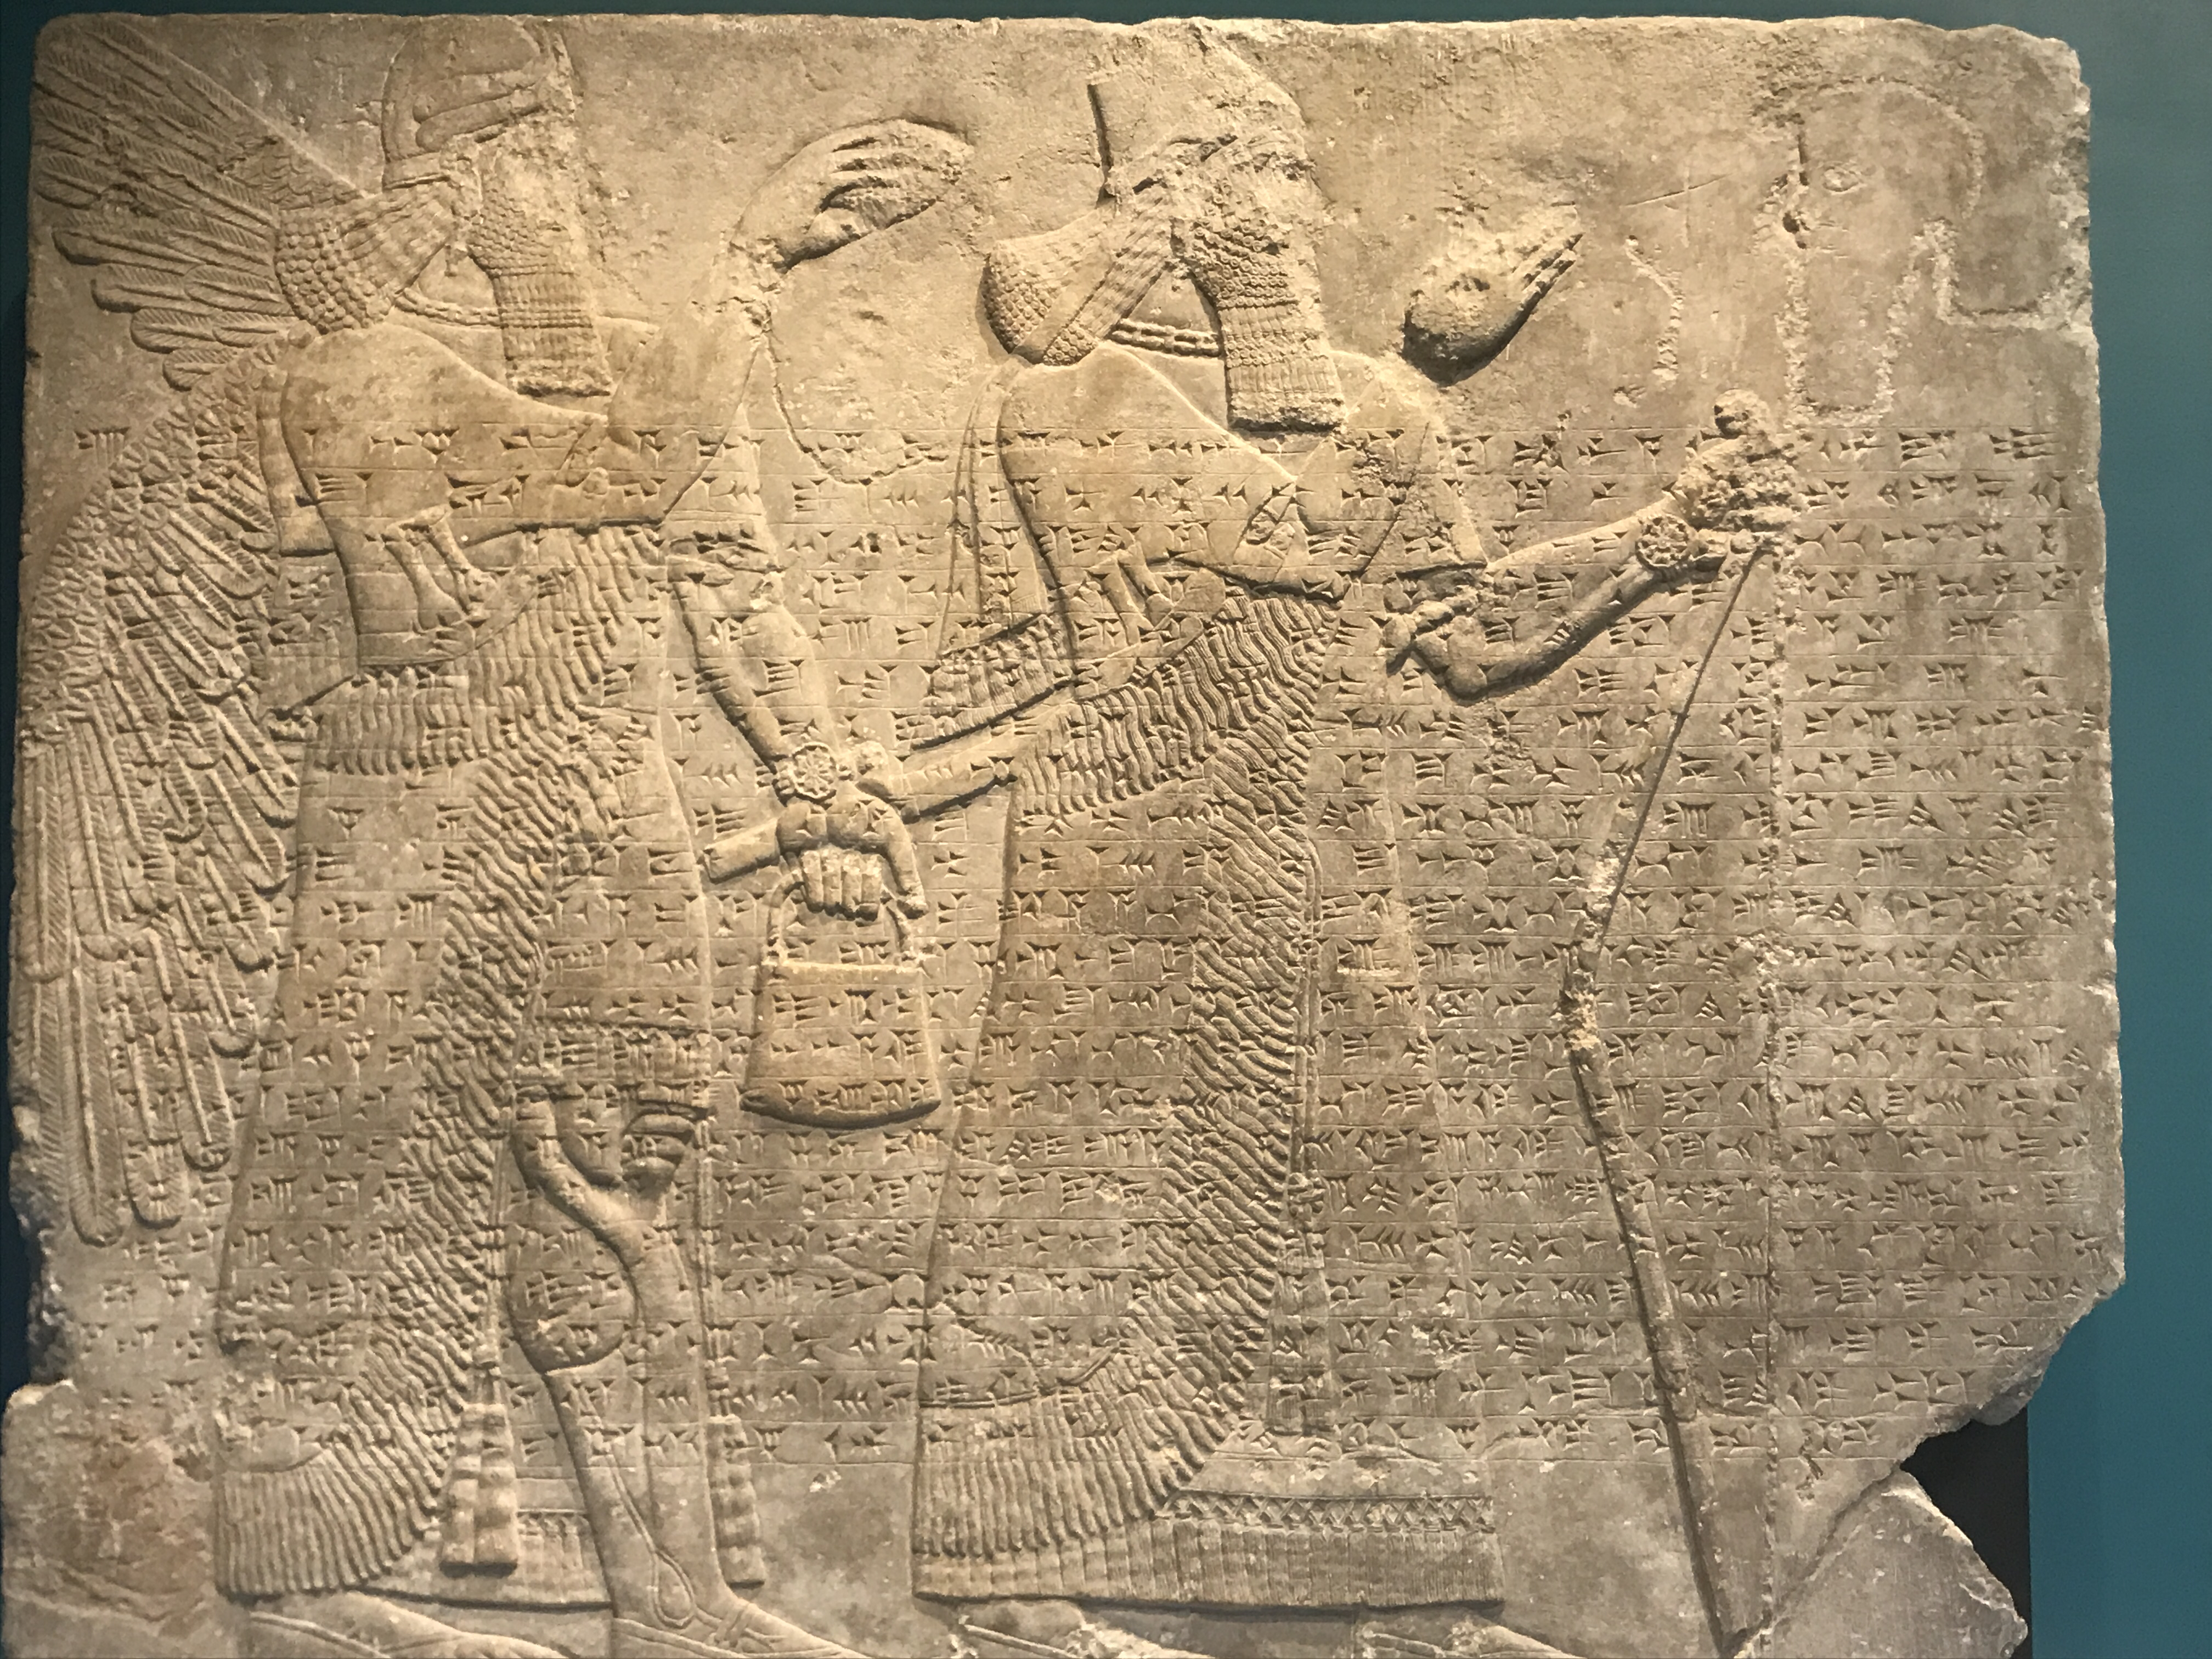 The Assyrian reliefs